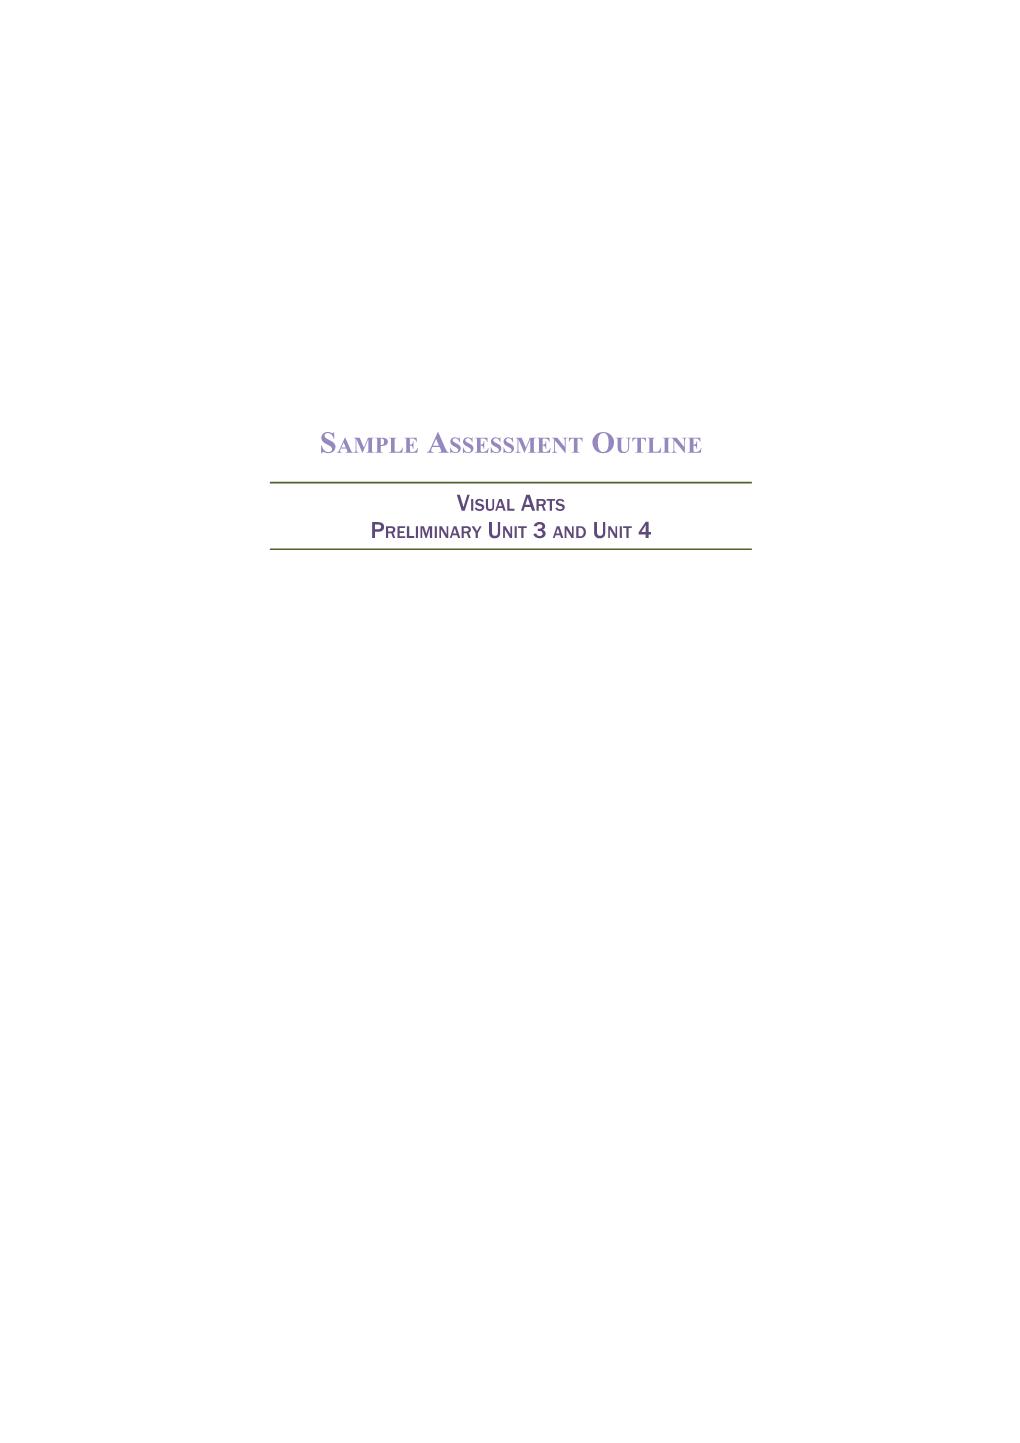 Sample Assessment Outline